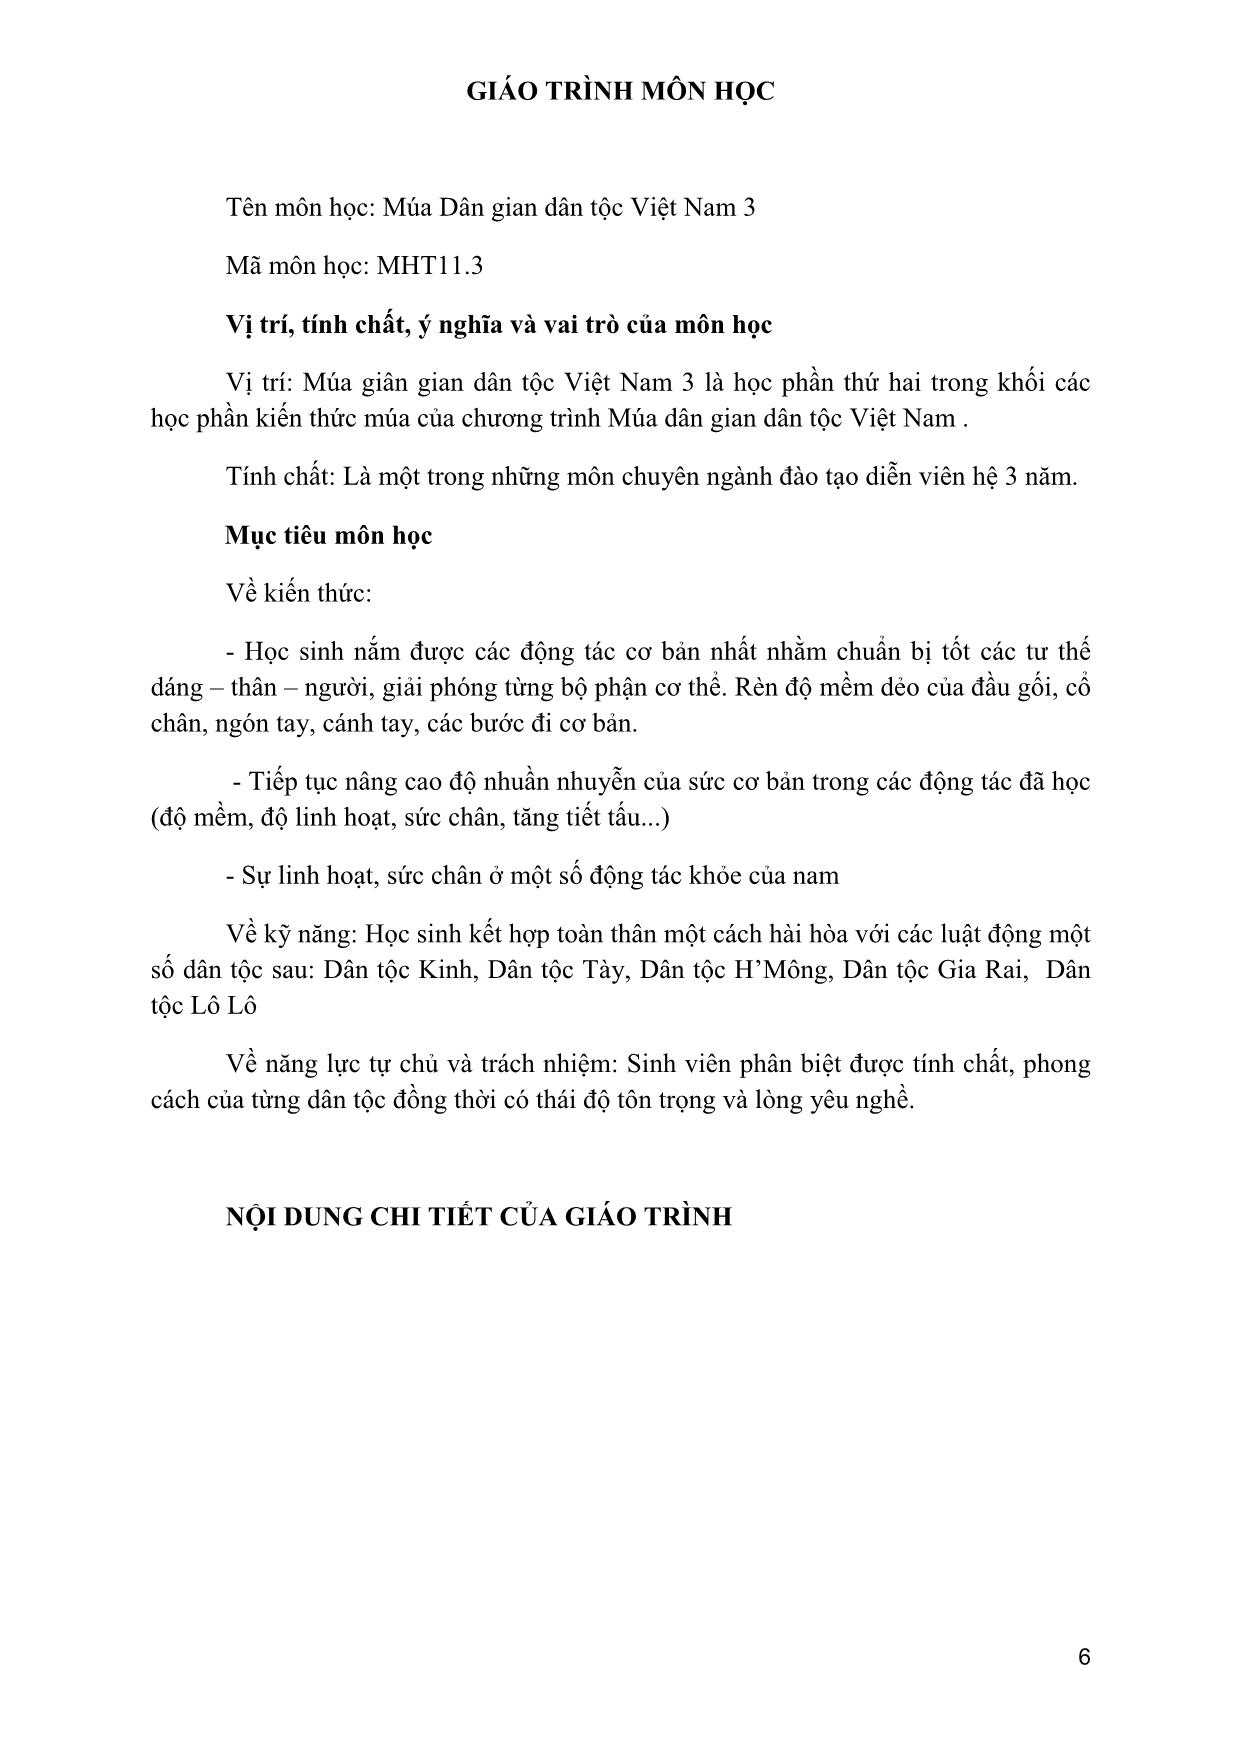 Giáo trình Múa dân gian dân tộc Việt Nam 3 trang 5